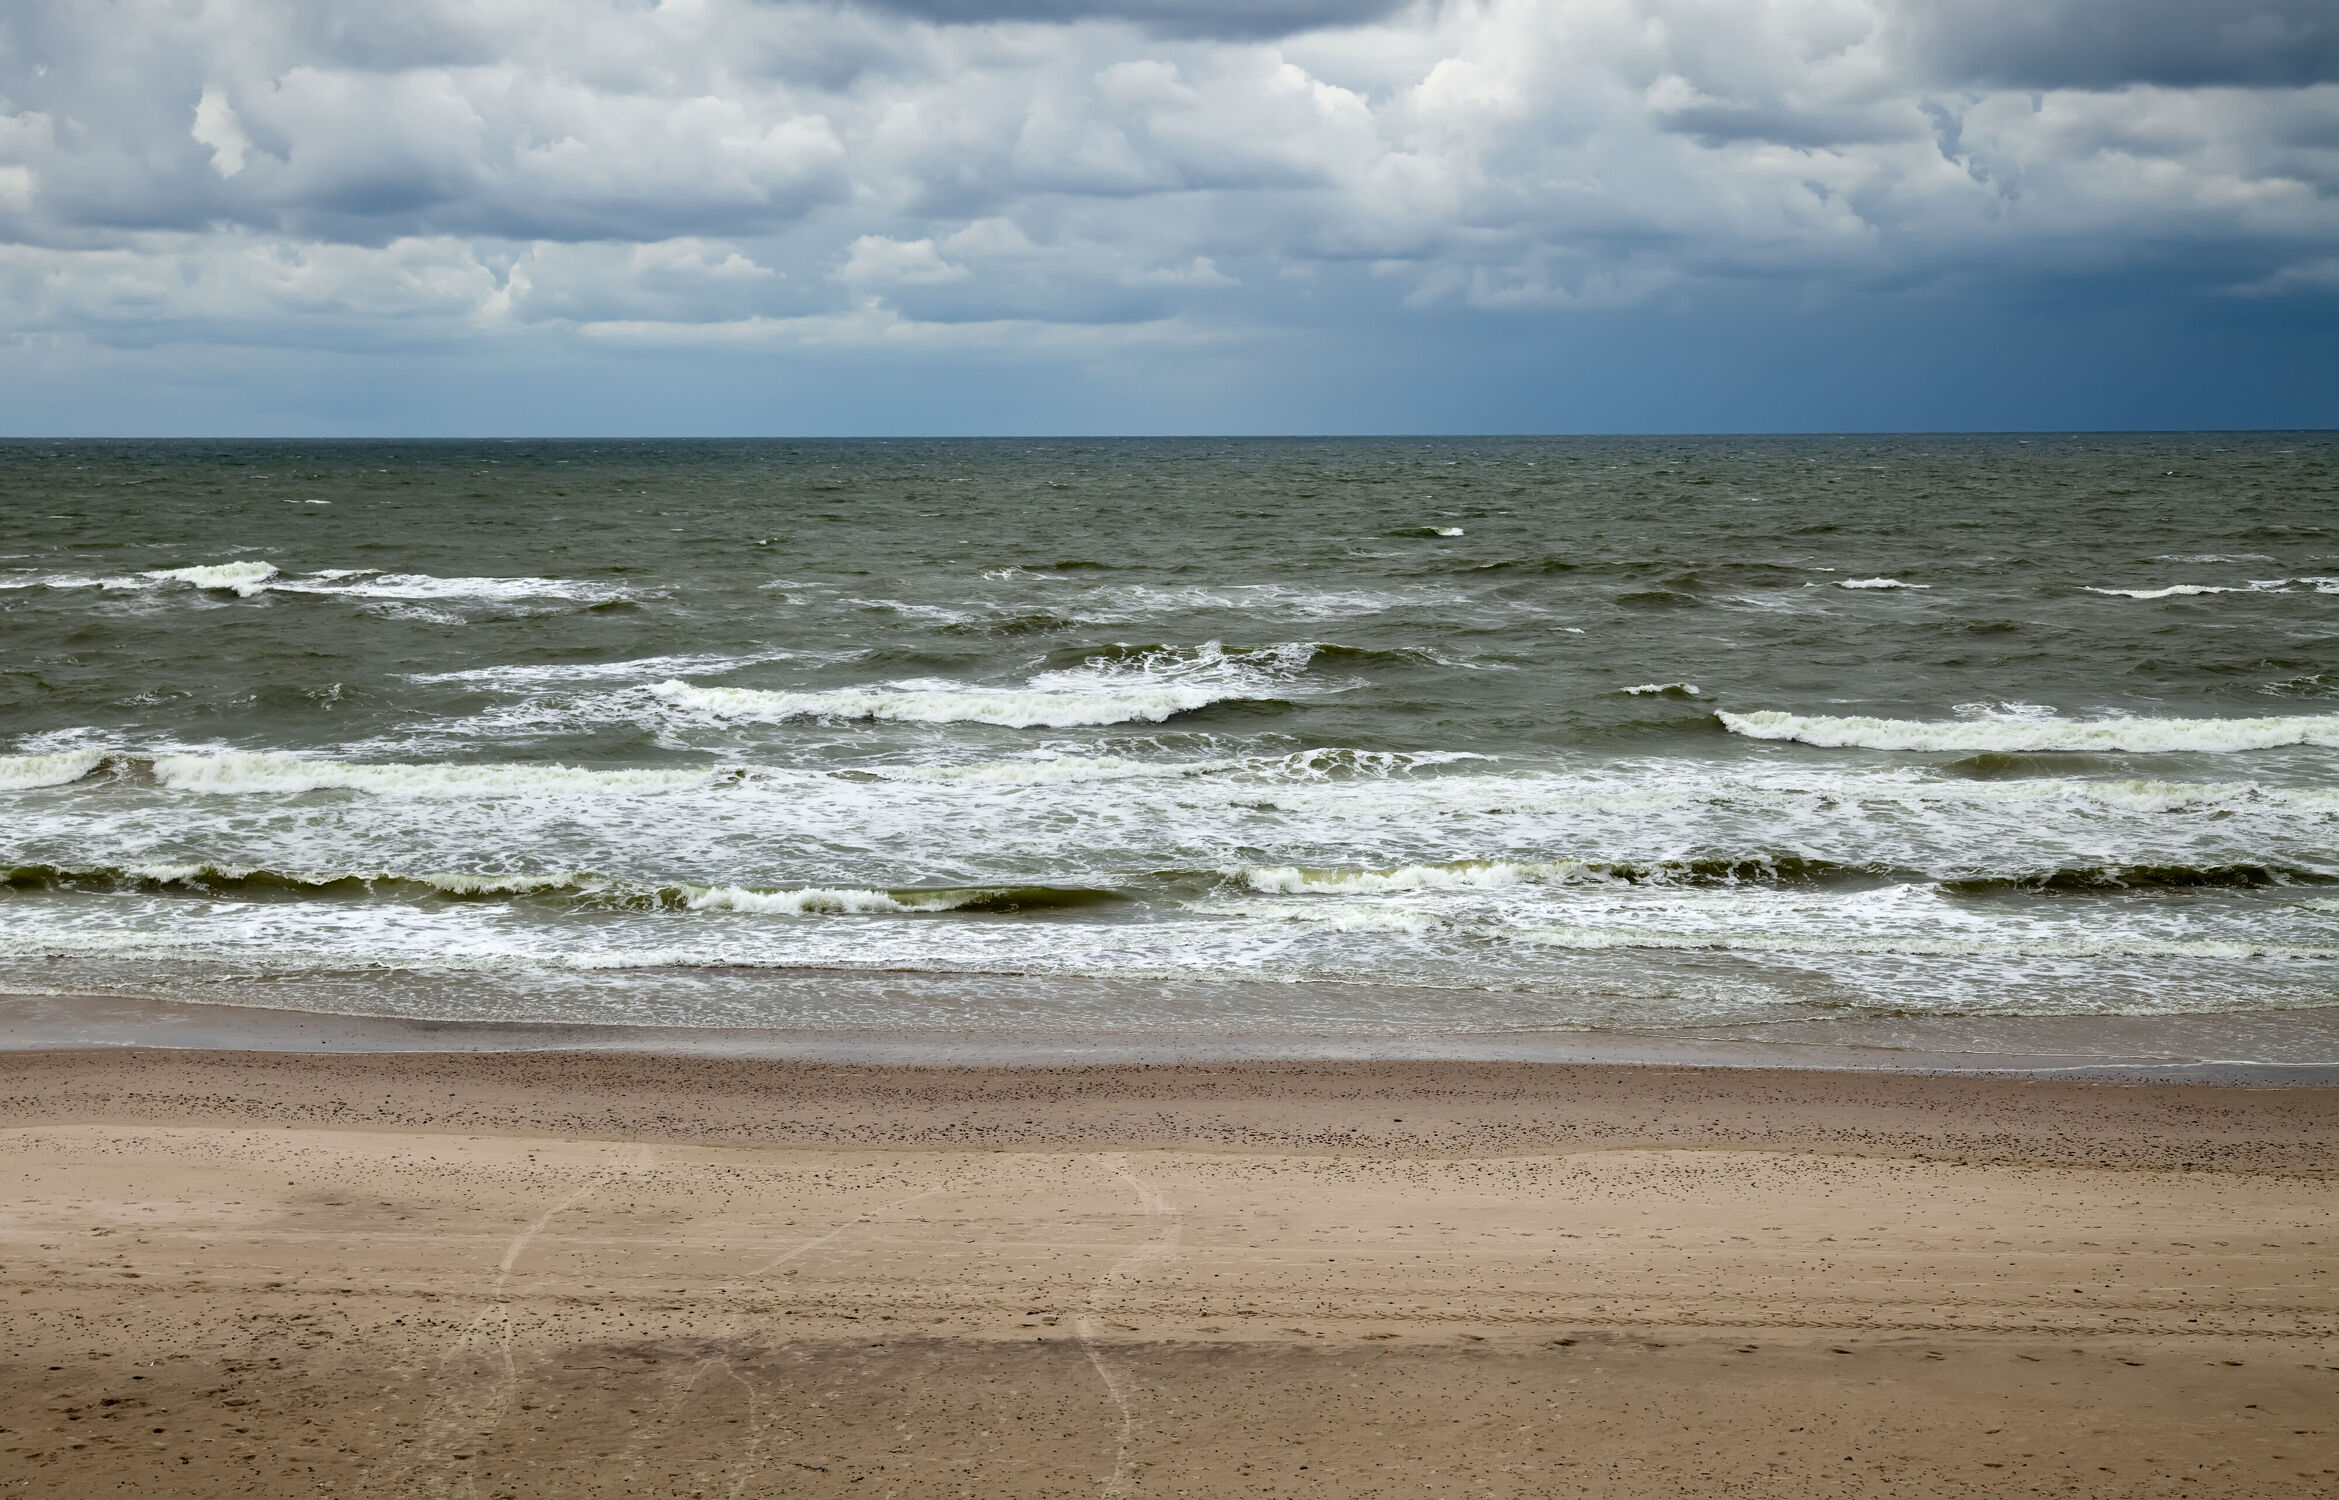 Bild mit Wasser, Wolken, Wellen, Sand, Strand, Meer, Gewitter, Regen, sturm, Unwetter